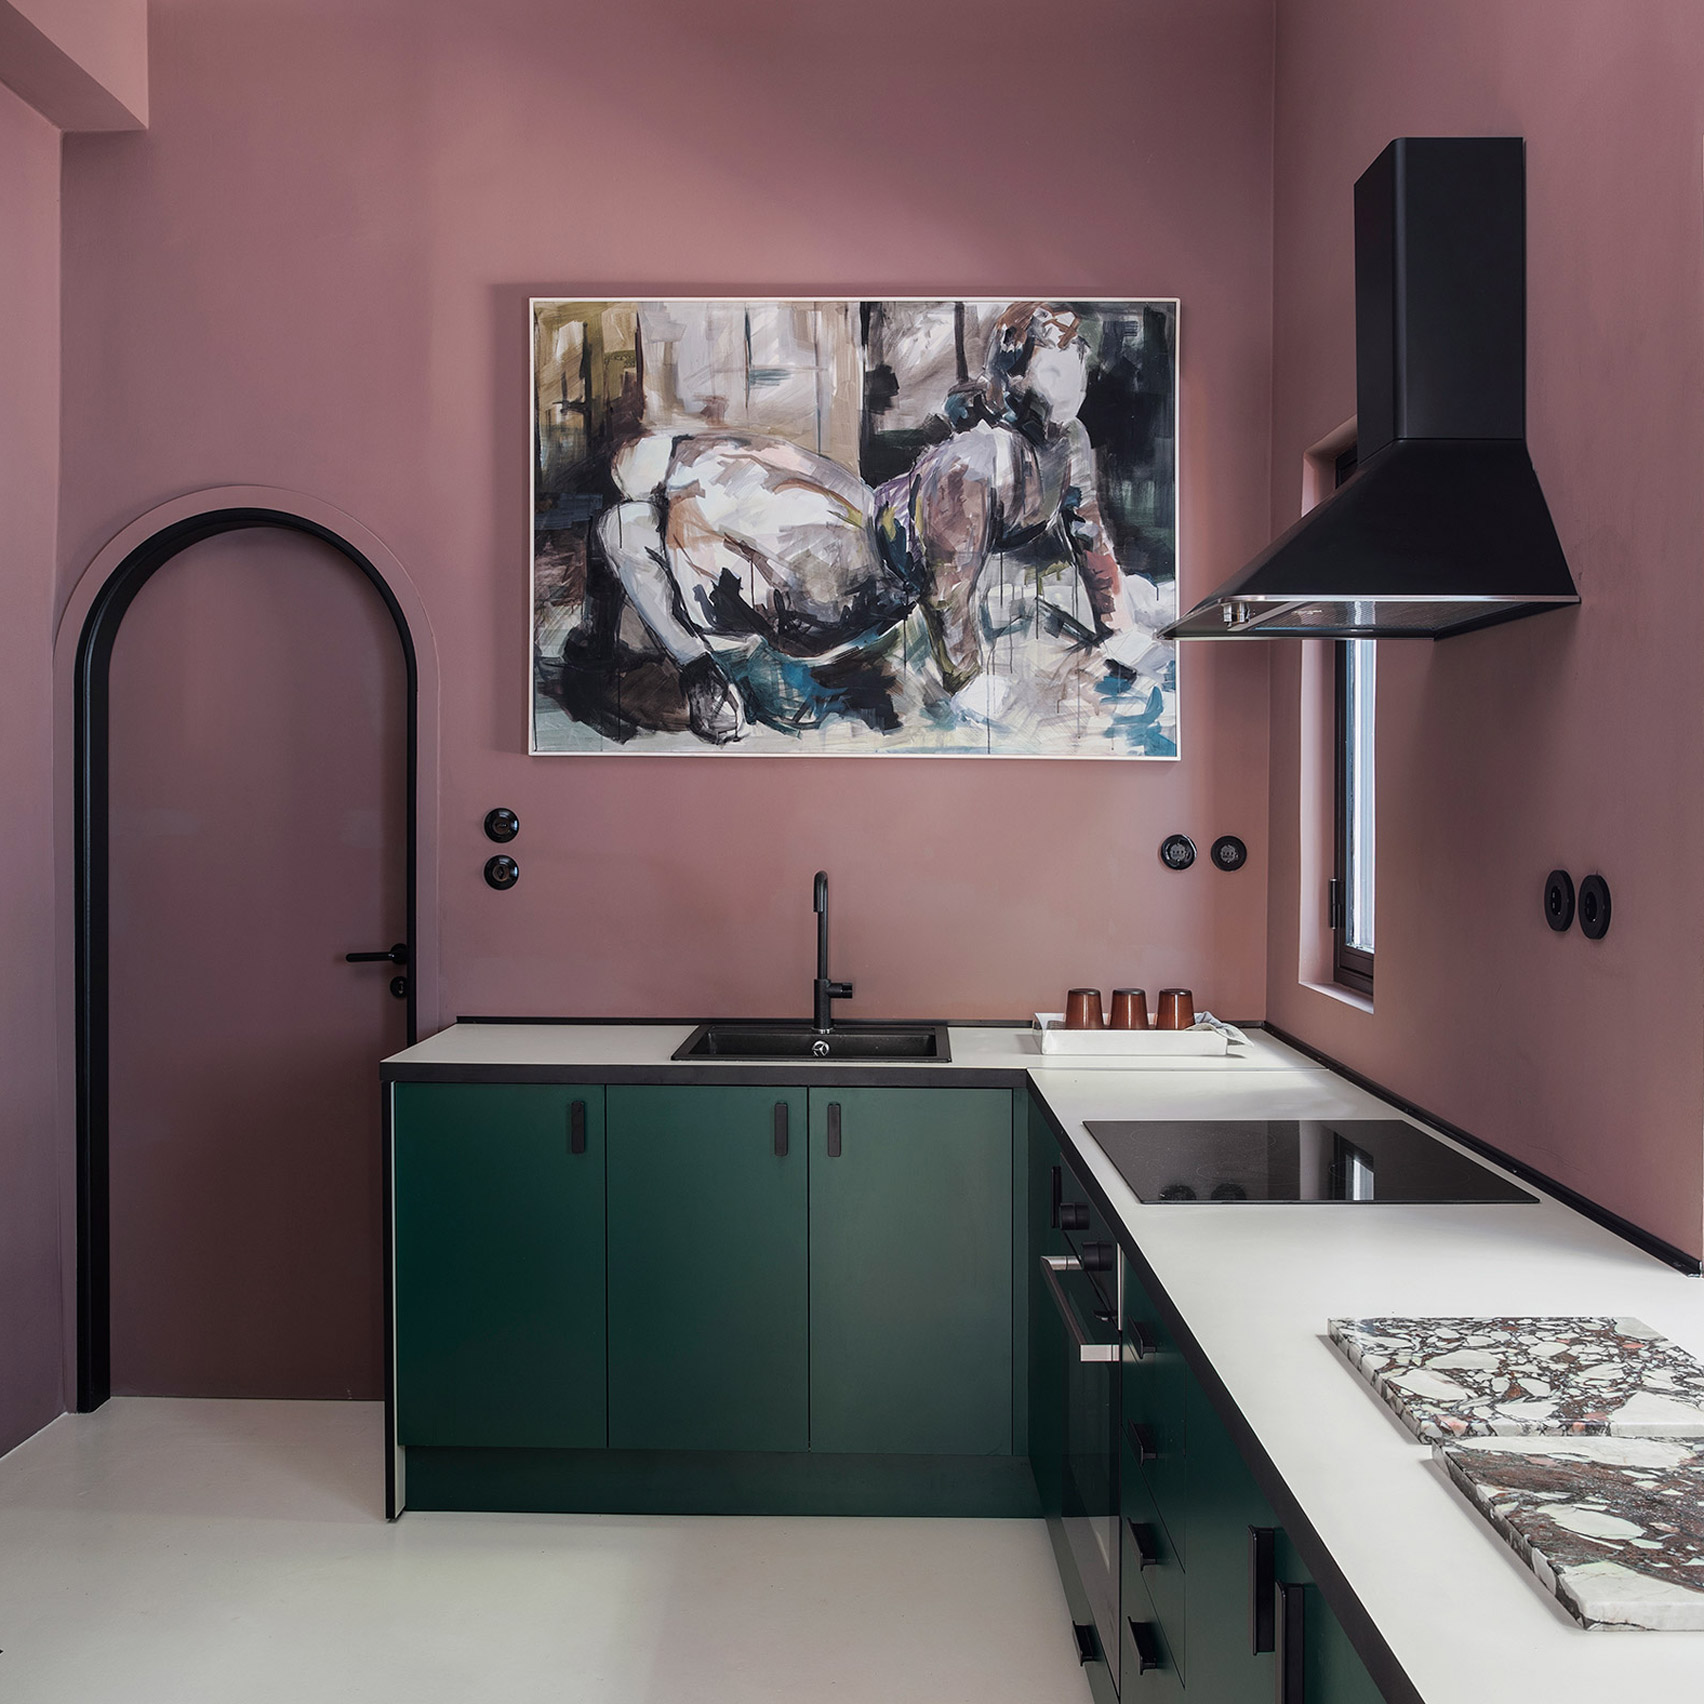 Phòng bếp tại Athens do nhà thiết kế nội thất người Hy Lạp Stamos Michael cải tạo, biến nó trở thành khu vực nấu nướng đậm chất nghệ thuật. Bức tường màu tím mận kết hợp tủ bếp xanh ngọc lục bảo, kệ màu đen cho căn phòng chiều sâu lôi cuốn.